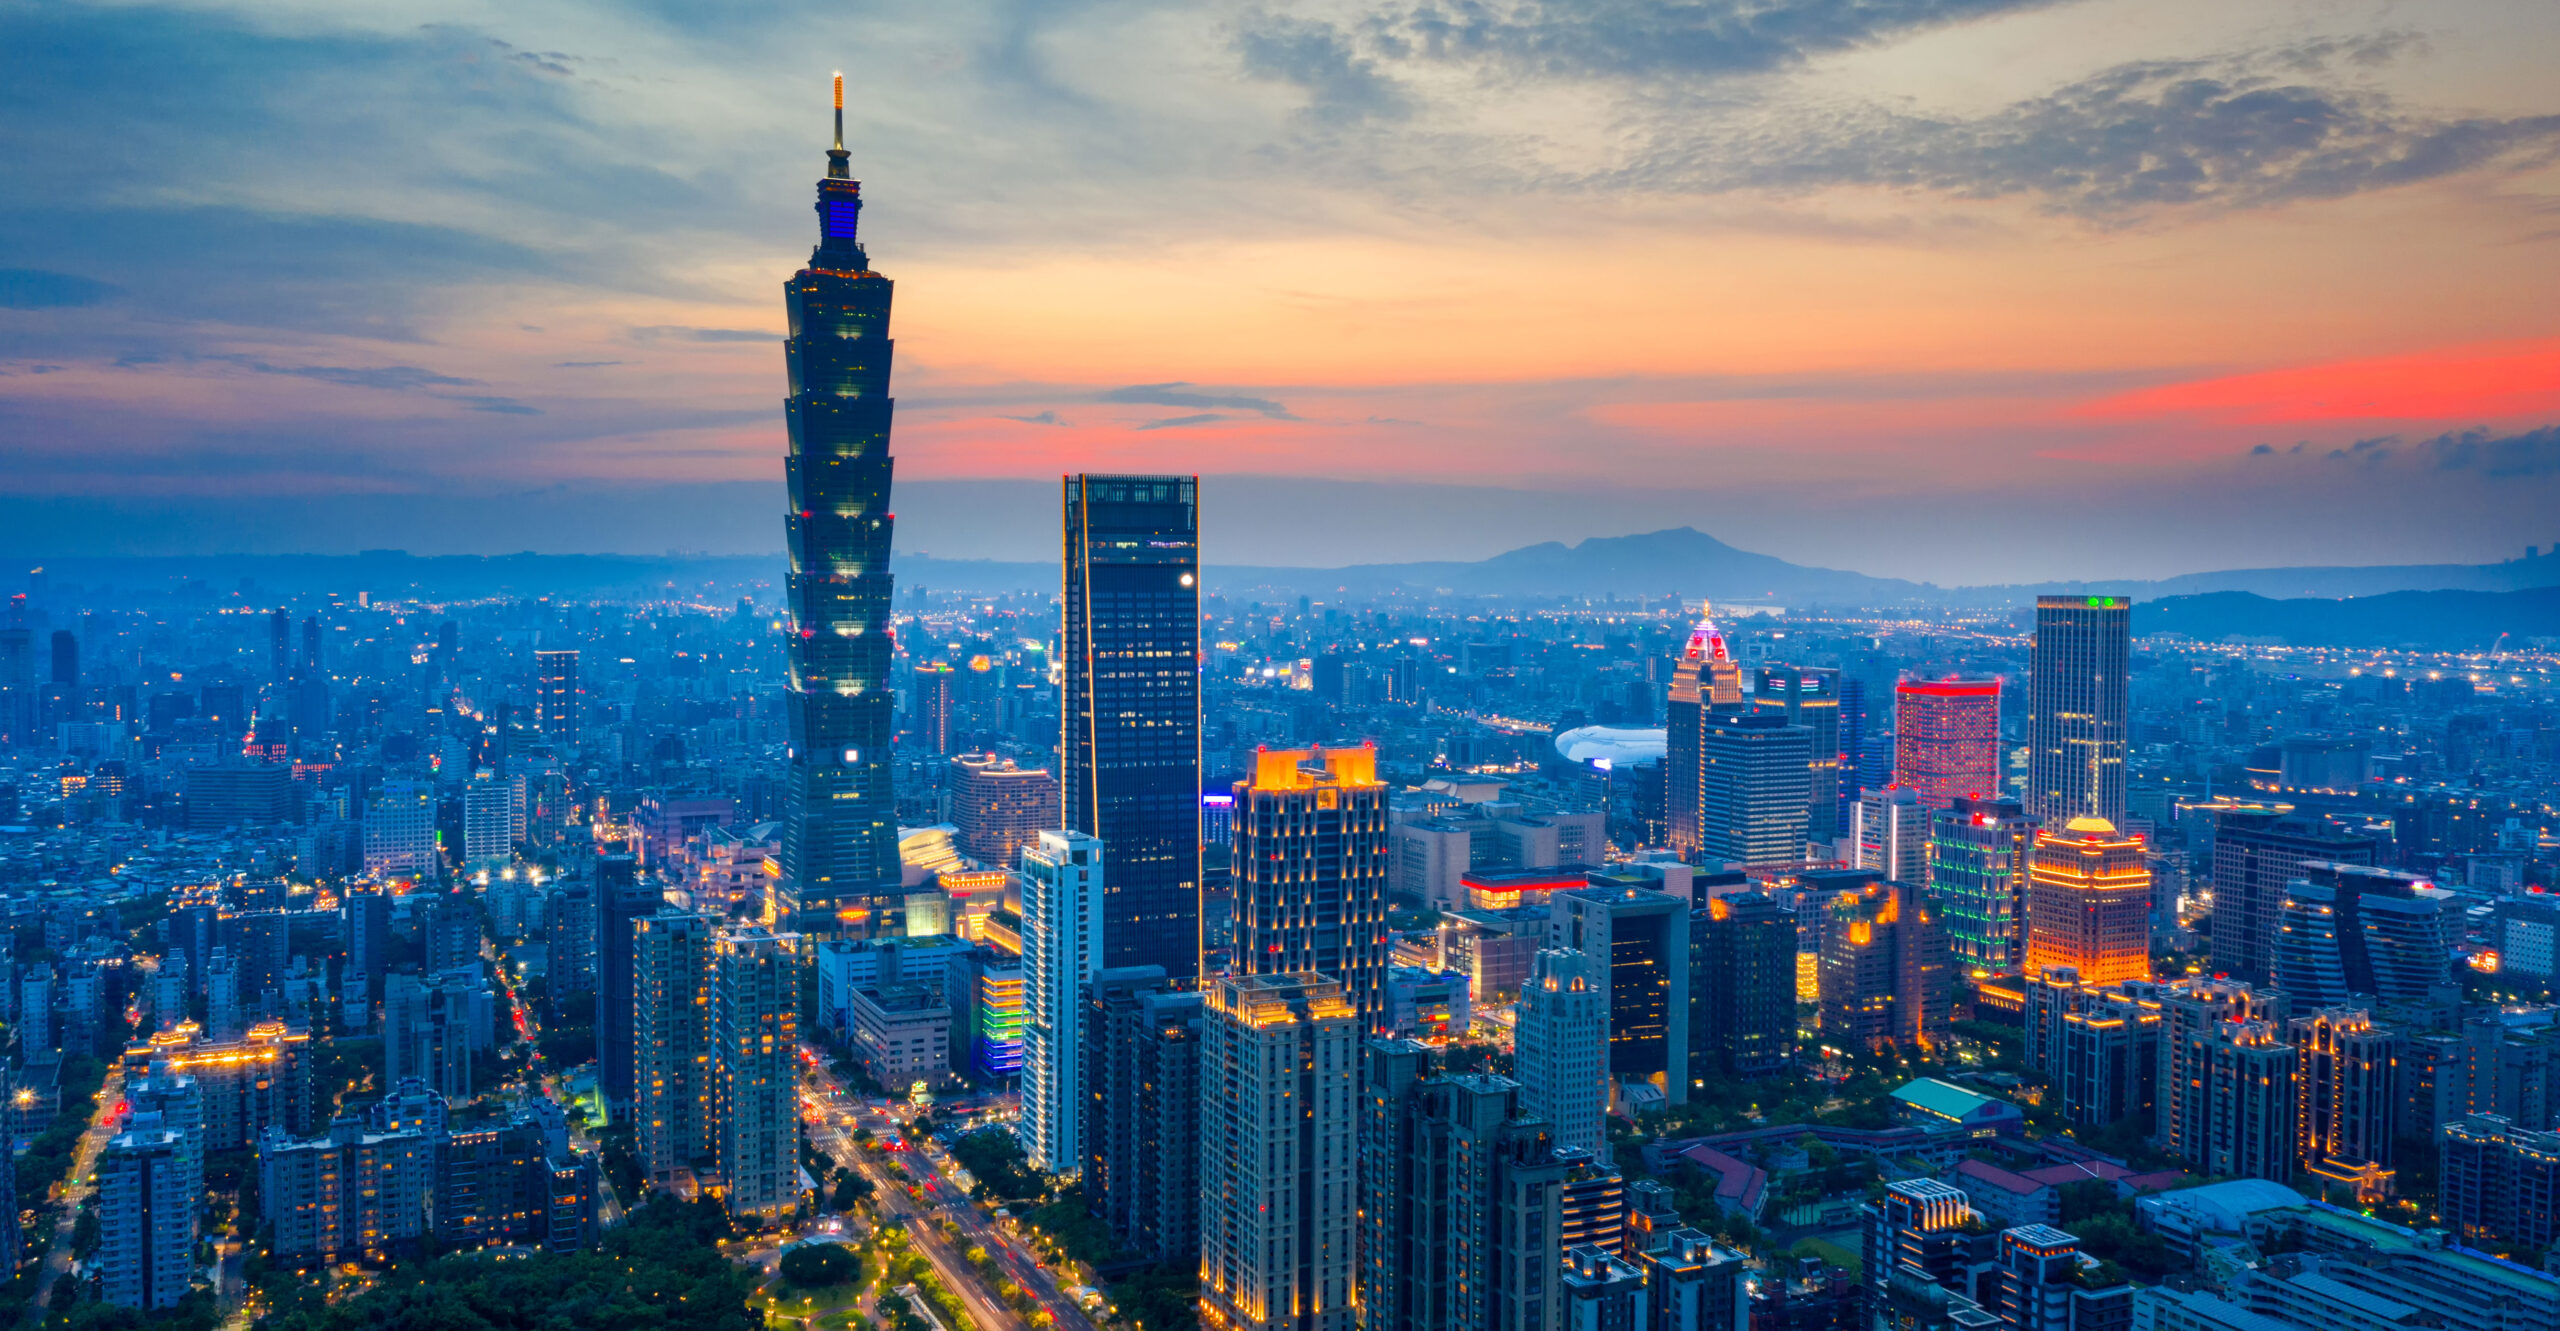 Ako demokratický spojenec si Taiwan zaslúži viac obchodu a investícií so Spojenými štátmi a Európou